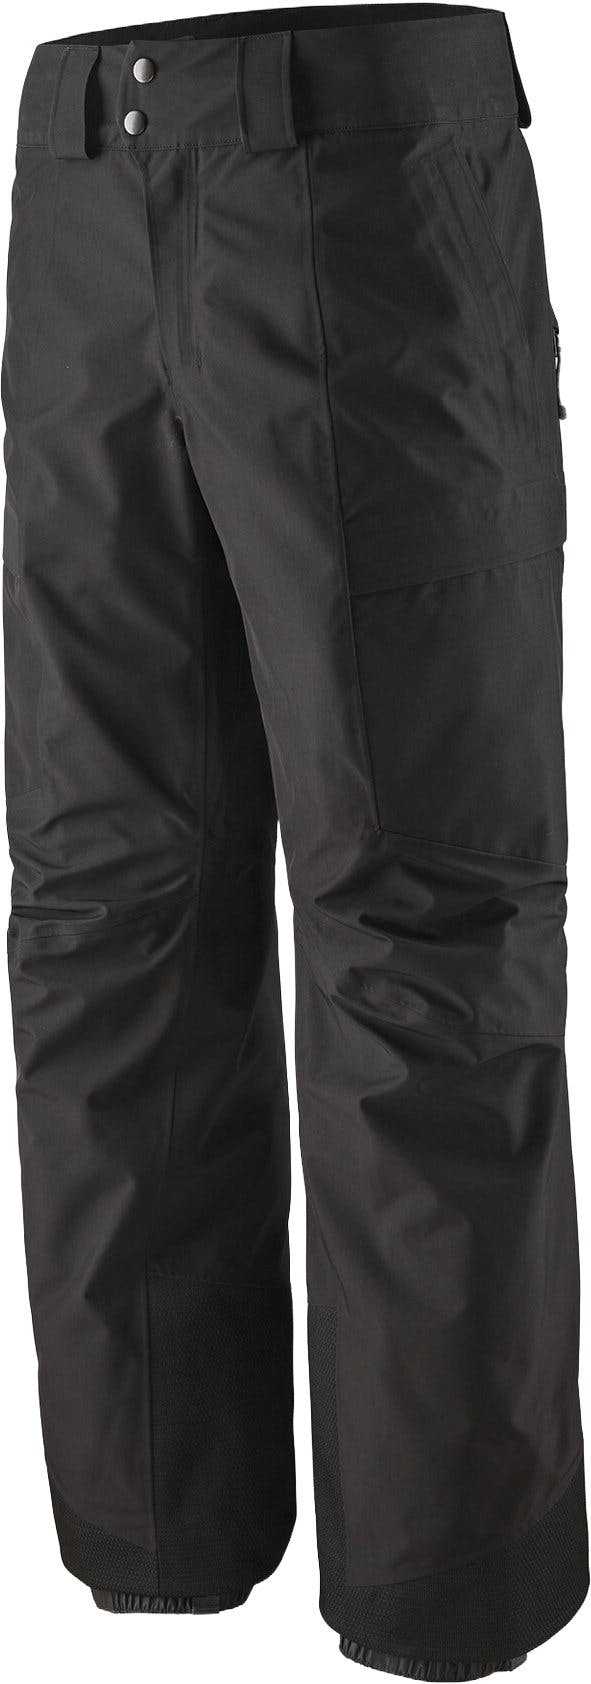 Numéro de l'image de la galerie de produits 1 pour le produit Pantalon coupe régulière Storm Shift - Homme